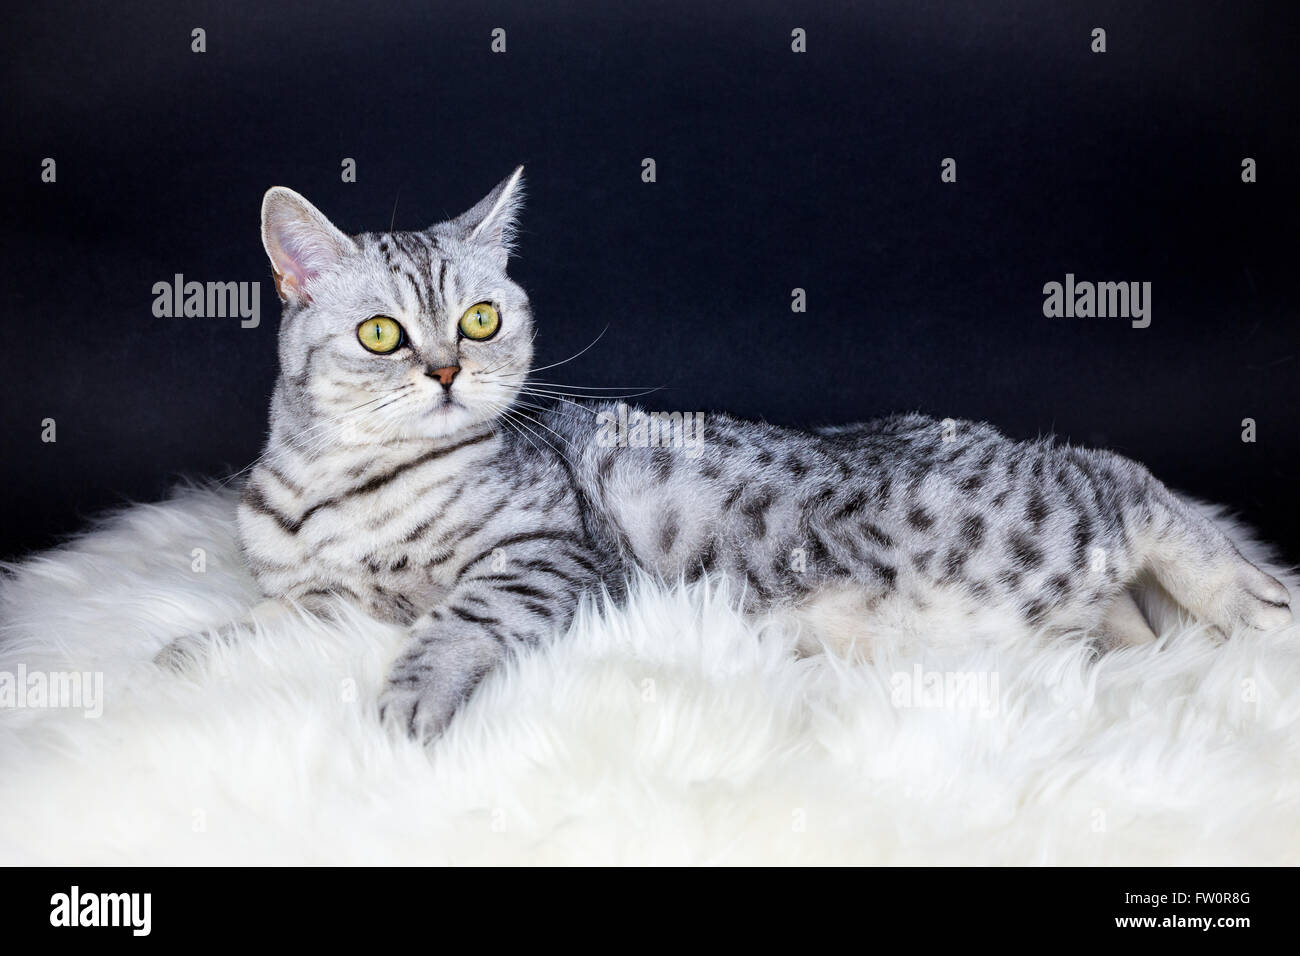 British pelo corto negro plata tabby spotted cat acostado en piel de borrego Foto de stock